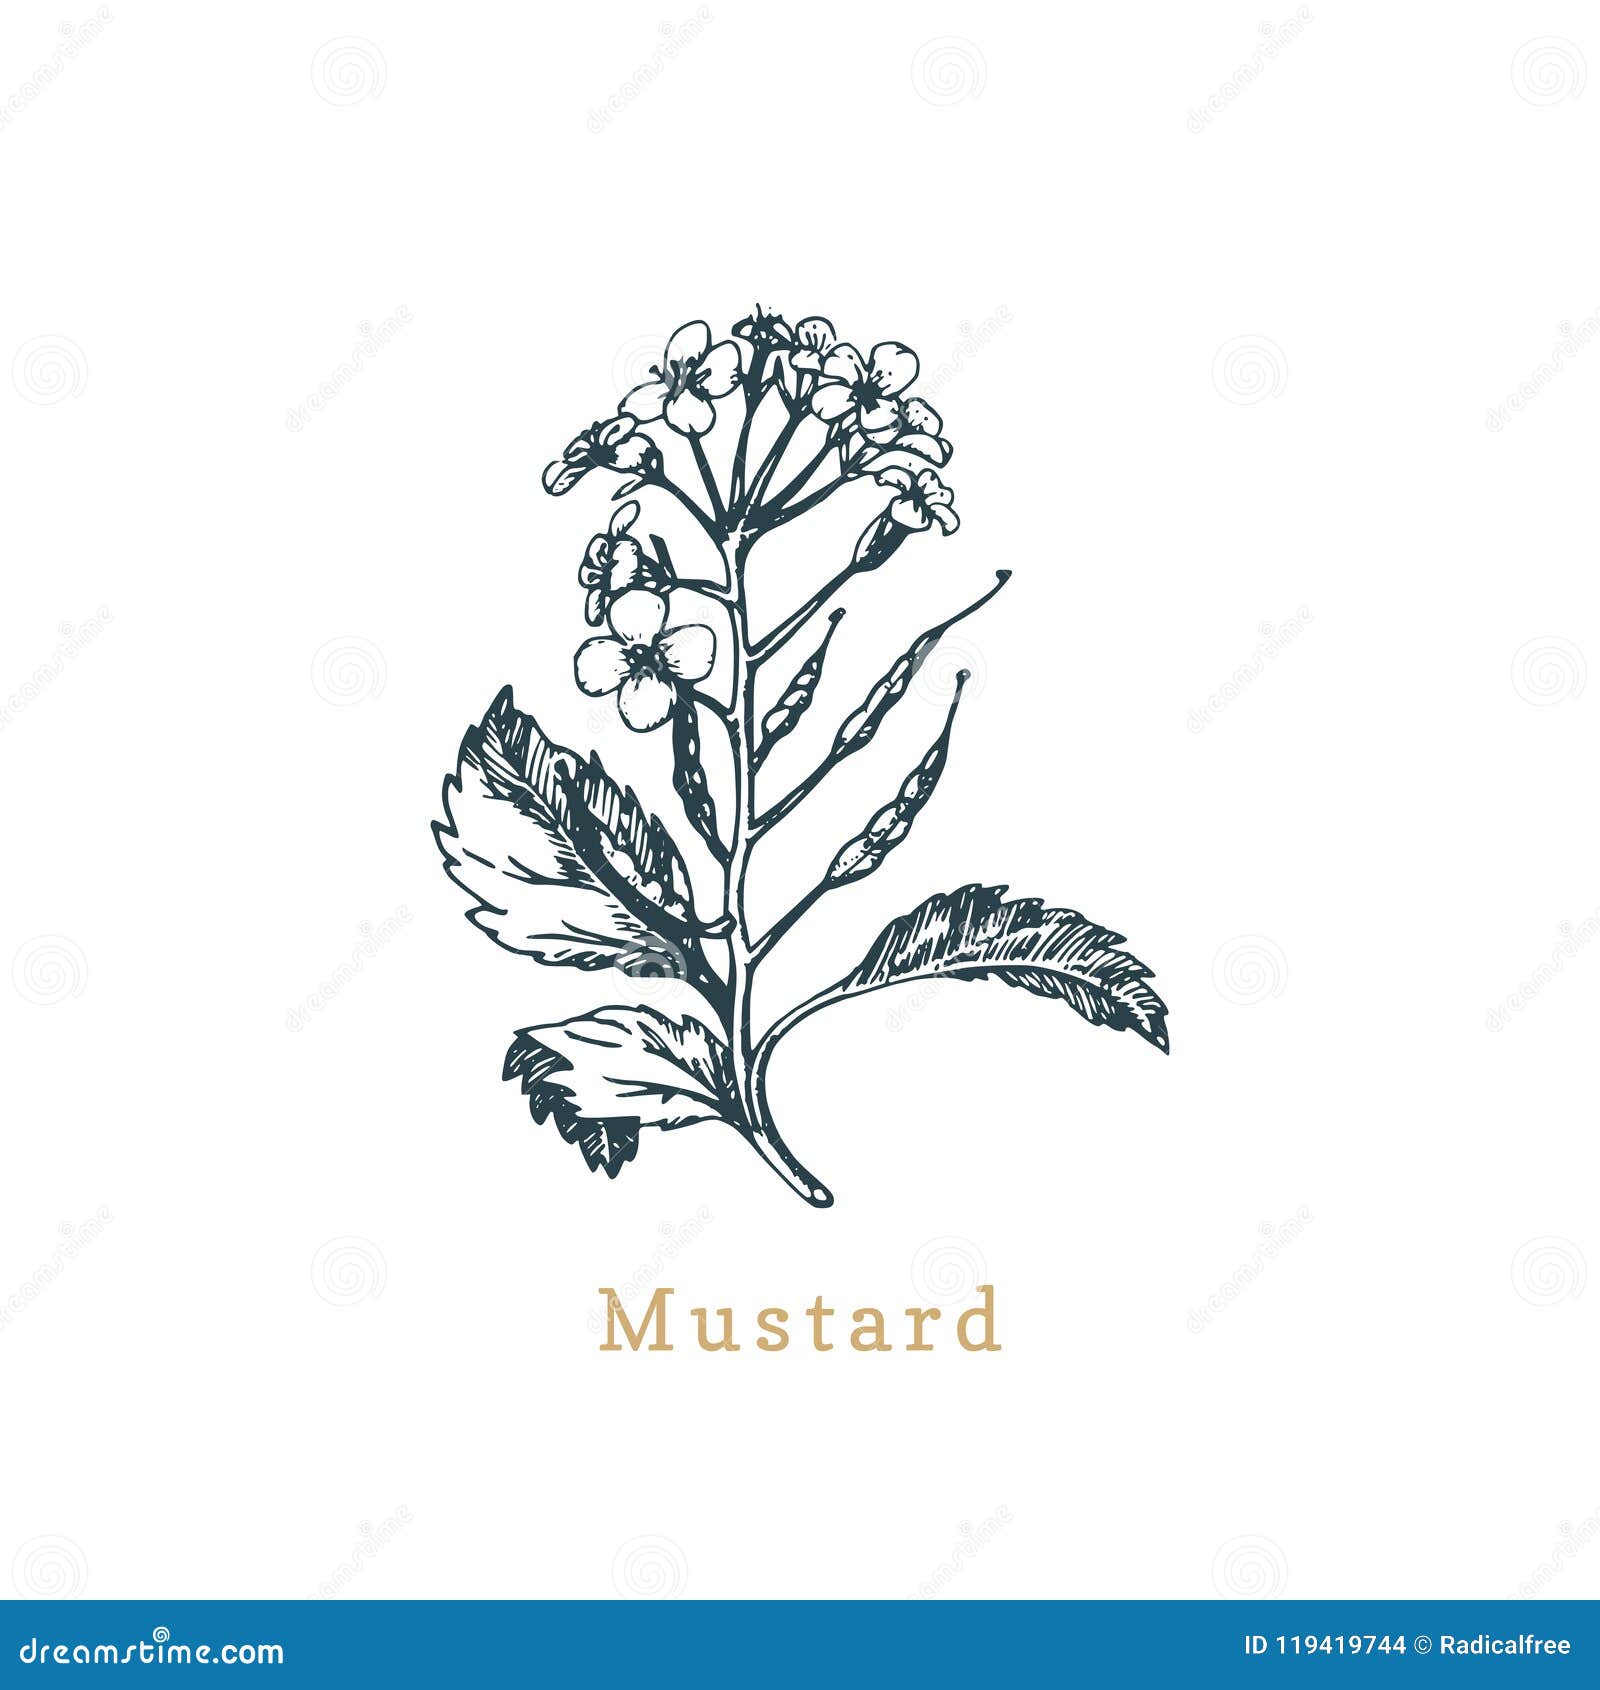 Mustard Plant Stock Illustrations, Royalty-Free Vector Graphics & Clip Art  - iStock | Mustard plant isolated, Mustard plant field, Garlic mustard plant